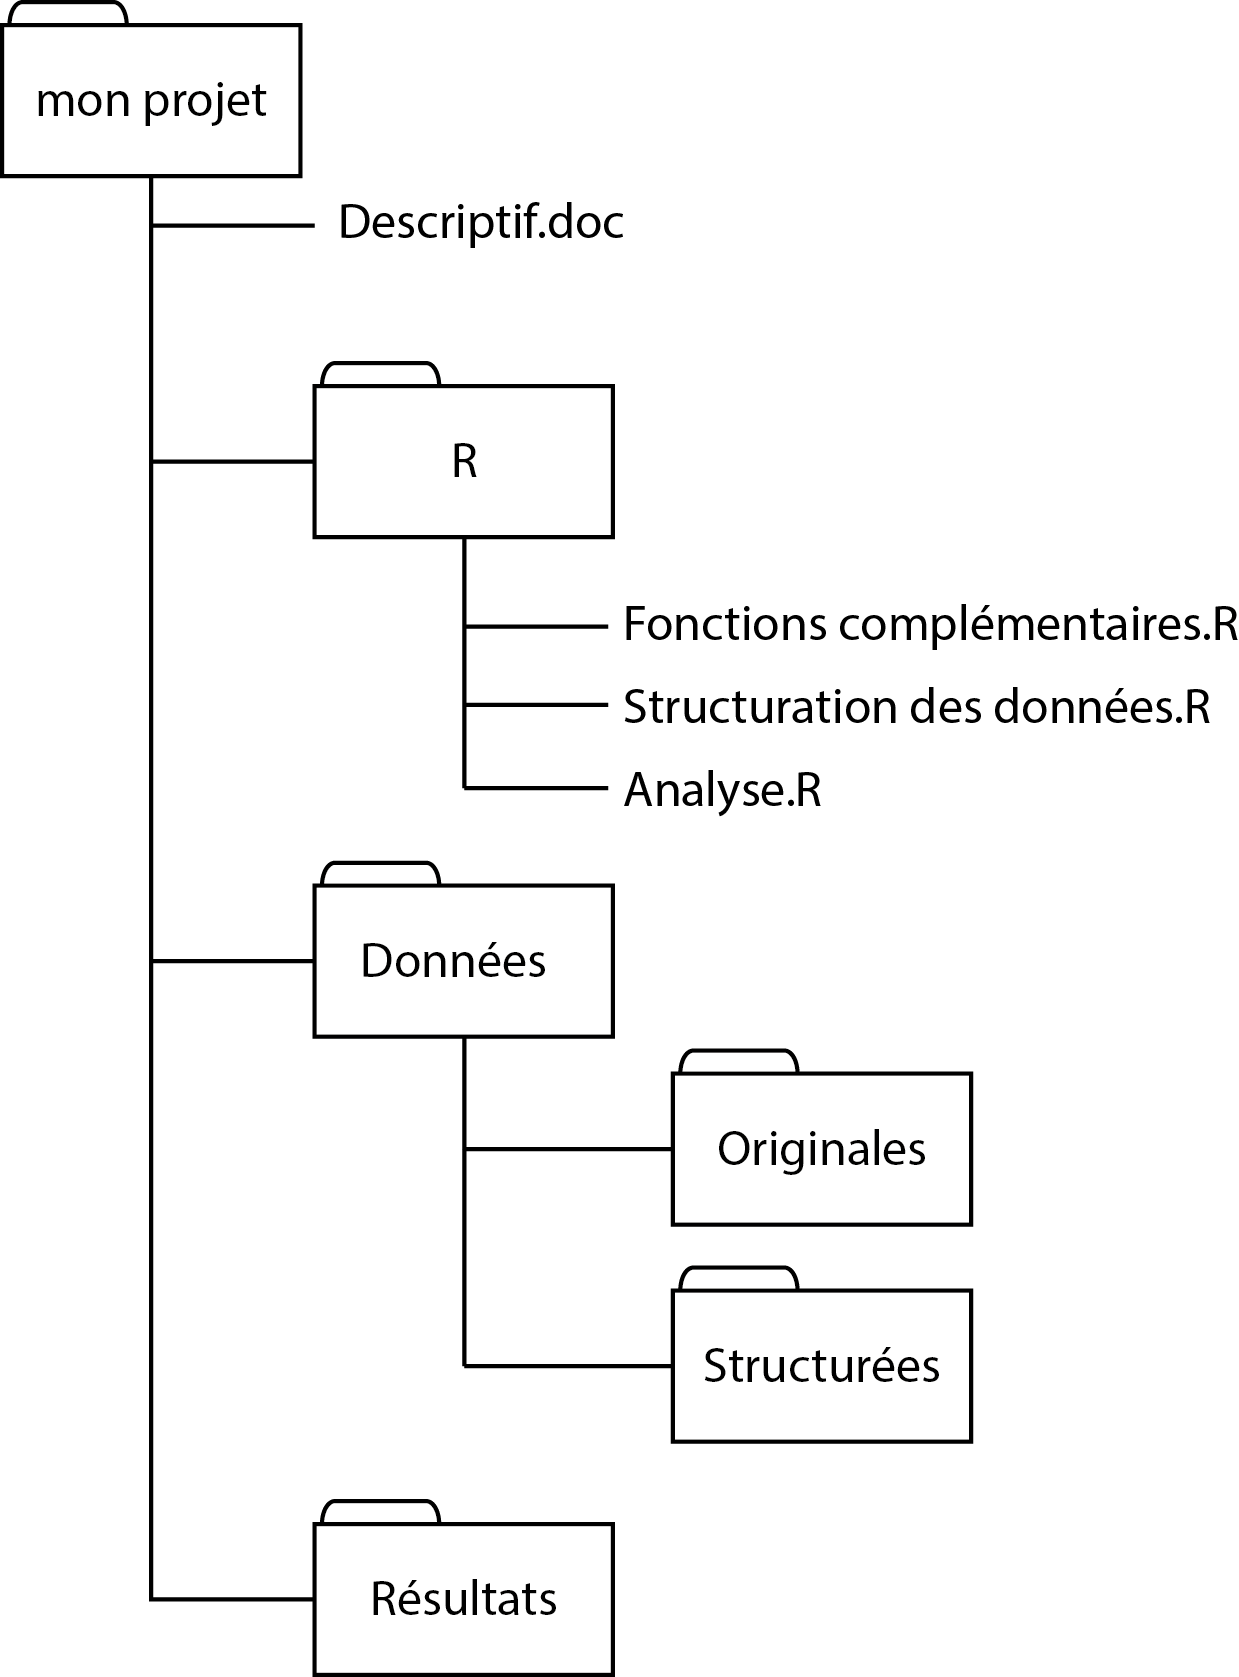 Structure de dossier recommandée pour un projet avec R